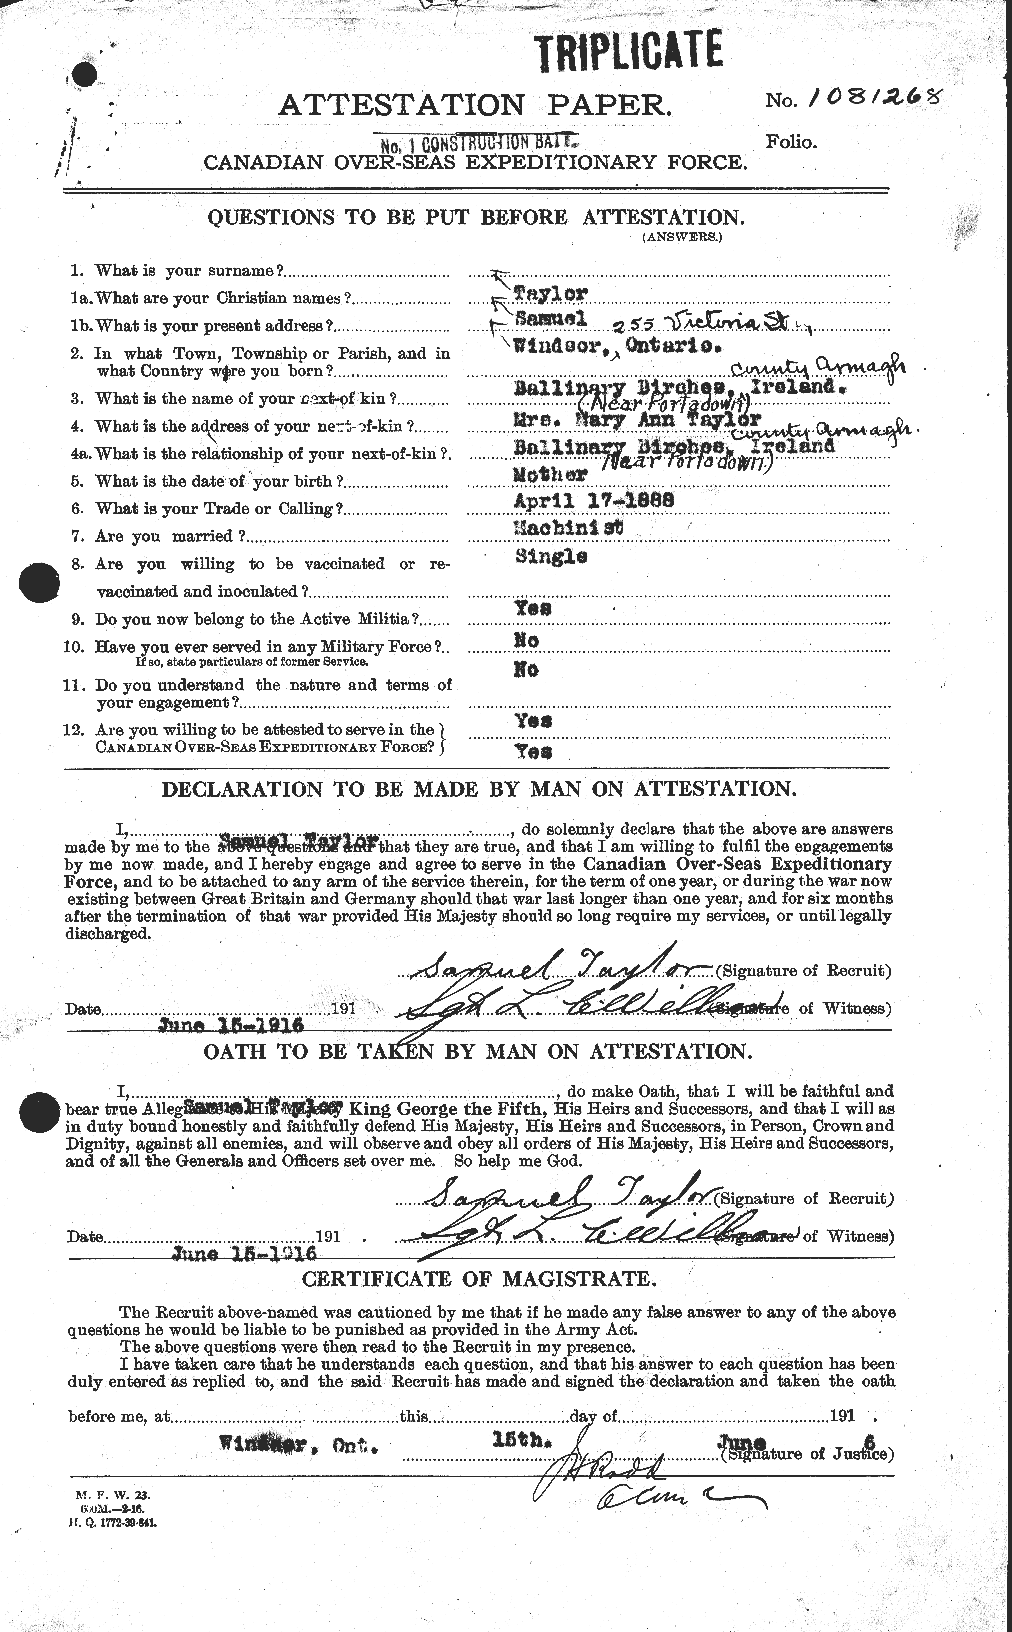 Dossiers du Personnel de la Première Guerre mondiale - CEC 627550a